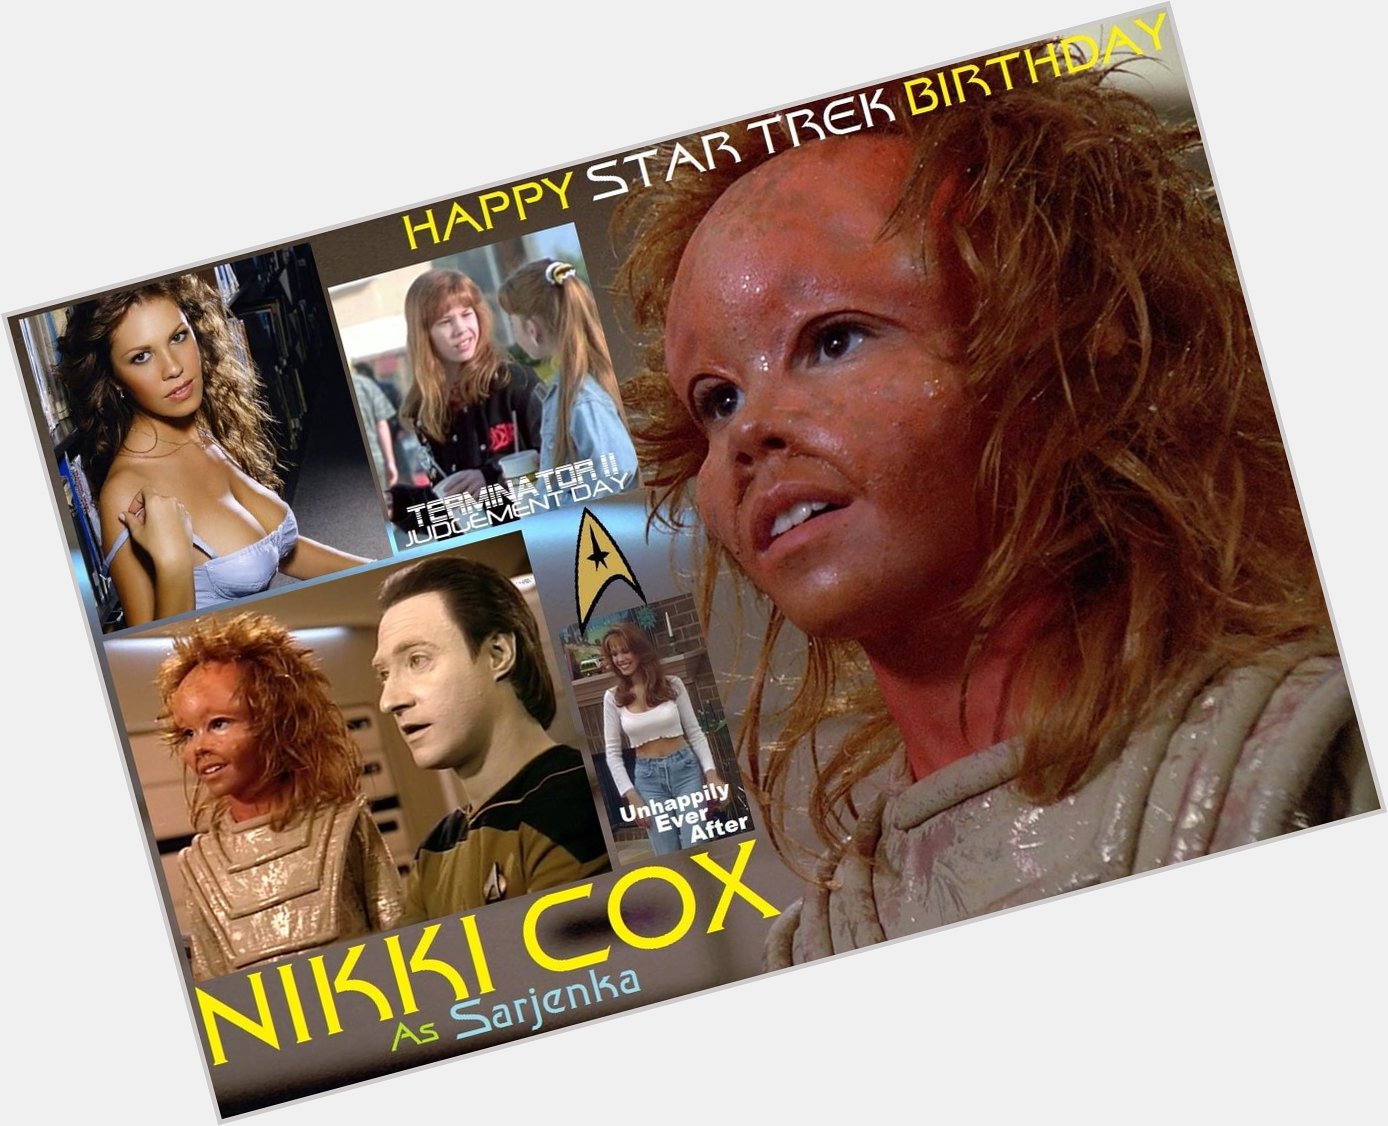 Happy Star Trek Birthday Nikki Cox 